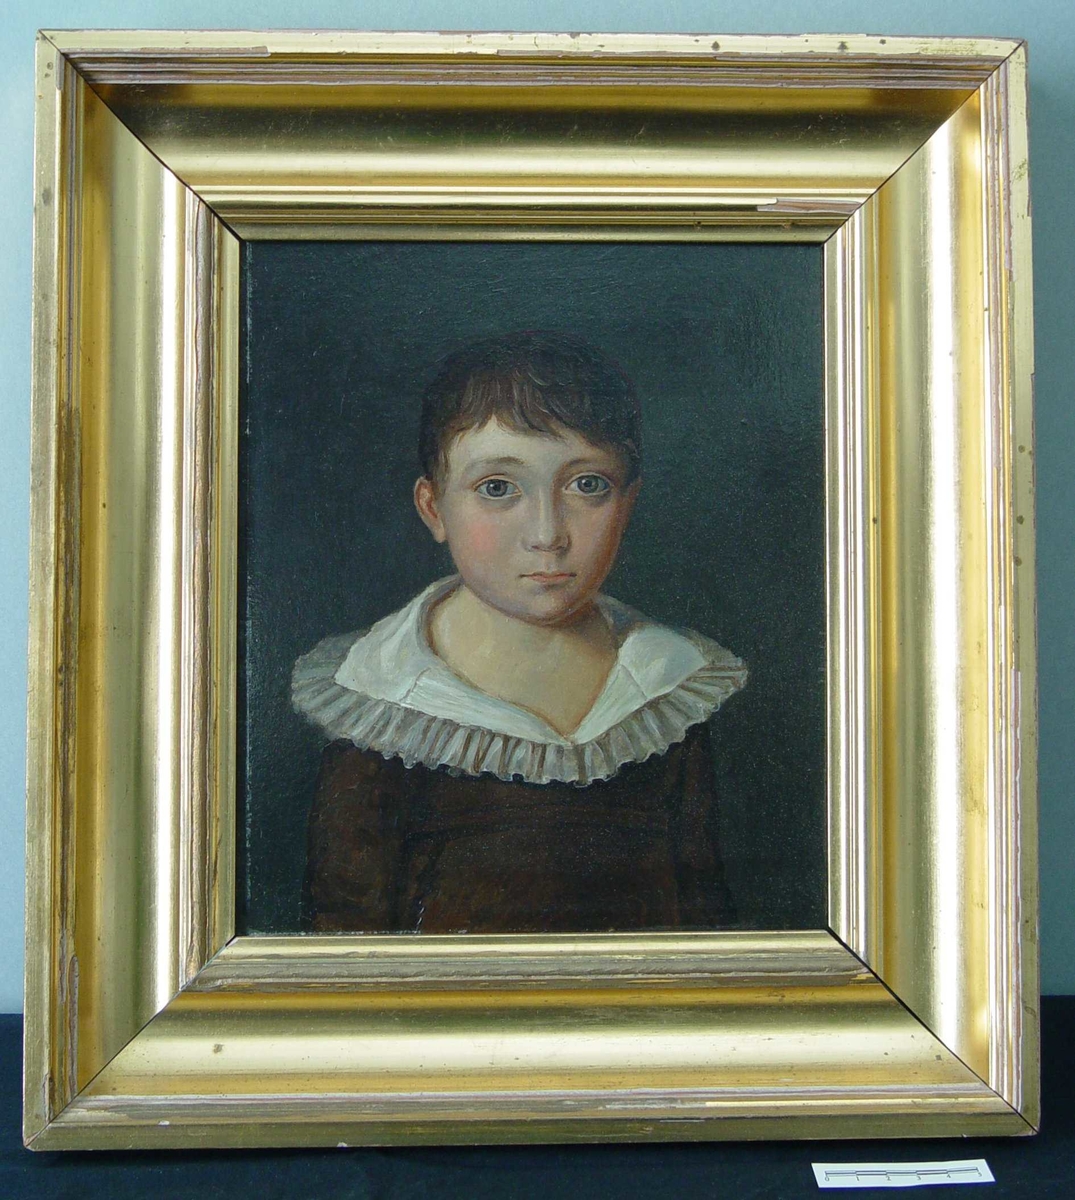 Forestiller Bernt Olaus Anker ( født 1809, død 1881 ) som 5 årig gutt.